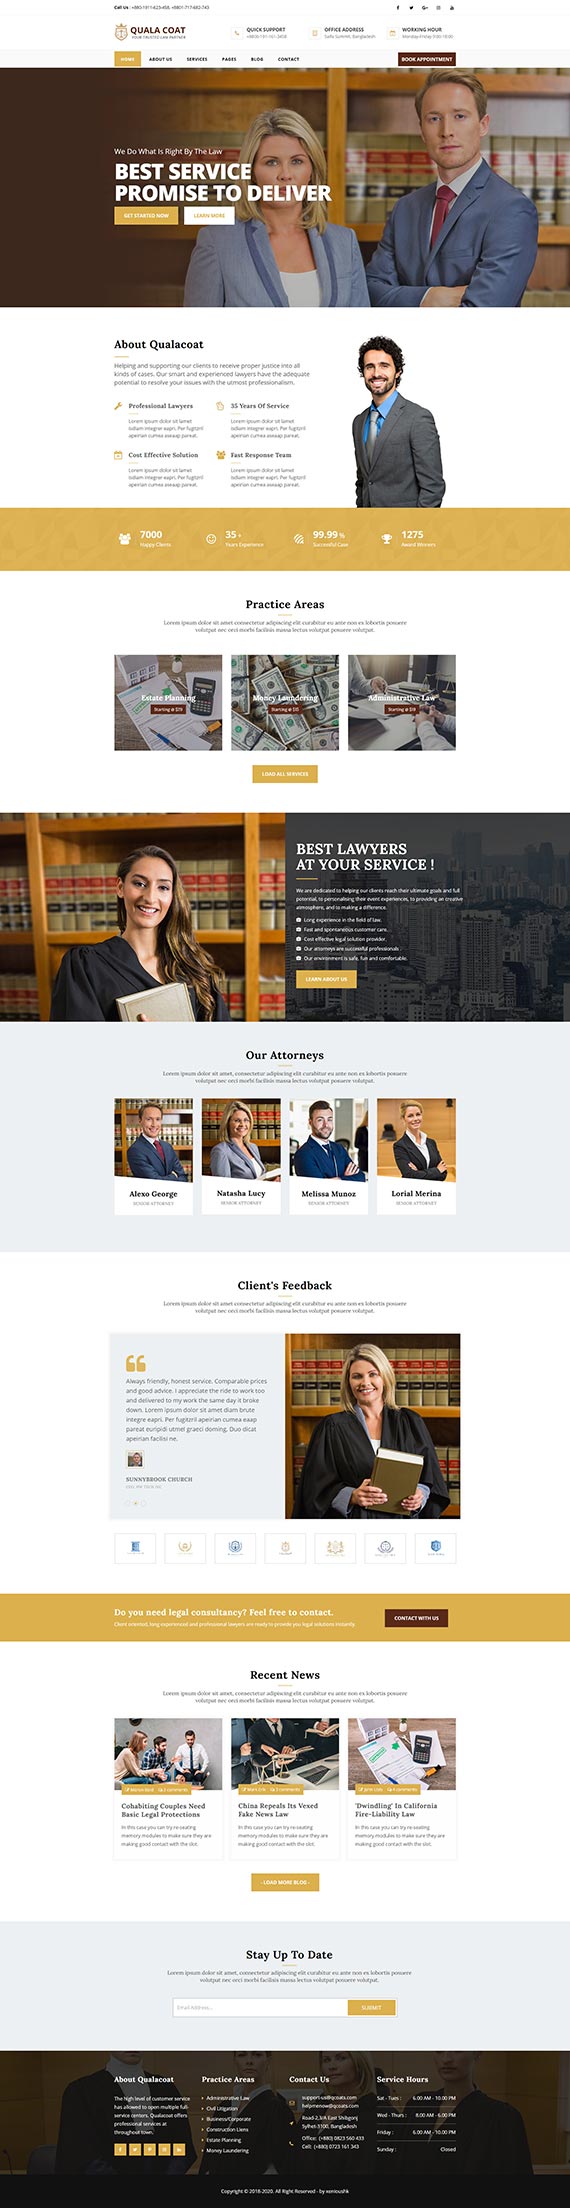 律师事务所和律师 HTML5 模板